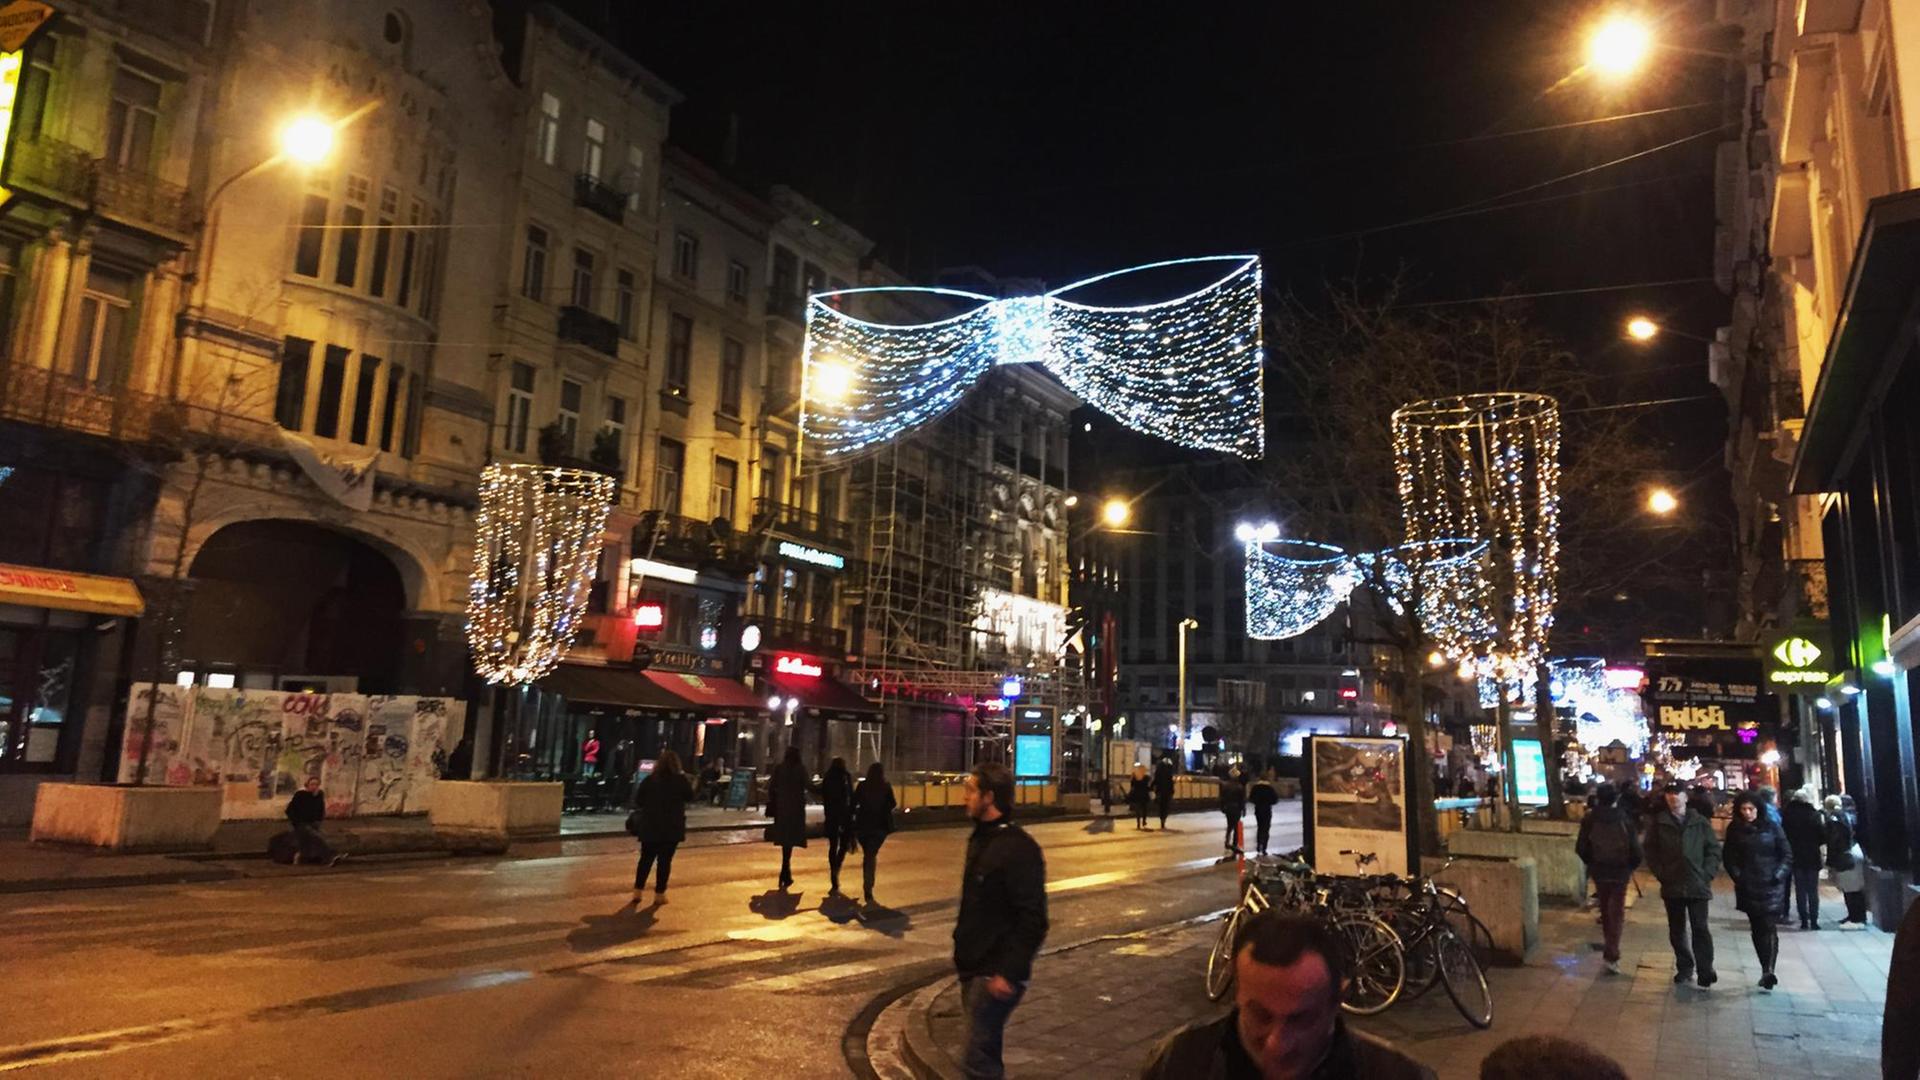 Zu sehen ist der Boulevard "Anspachlaan" im Herzen von Brüssel - mit kitschiger Beleuchtung.